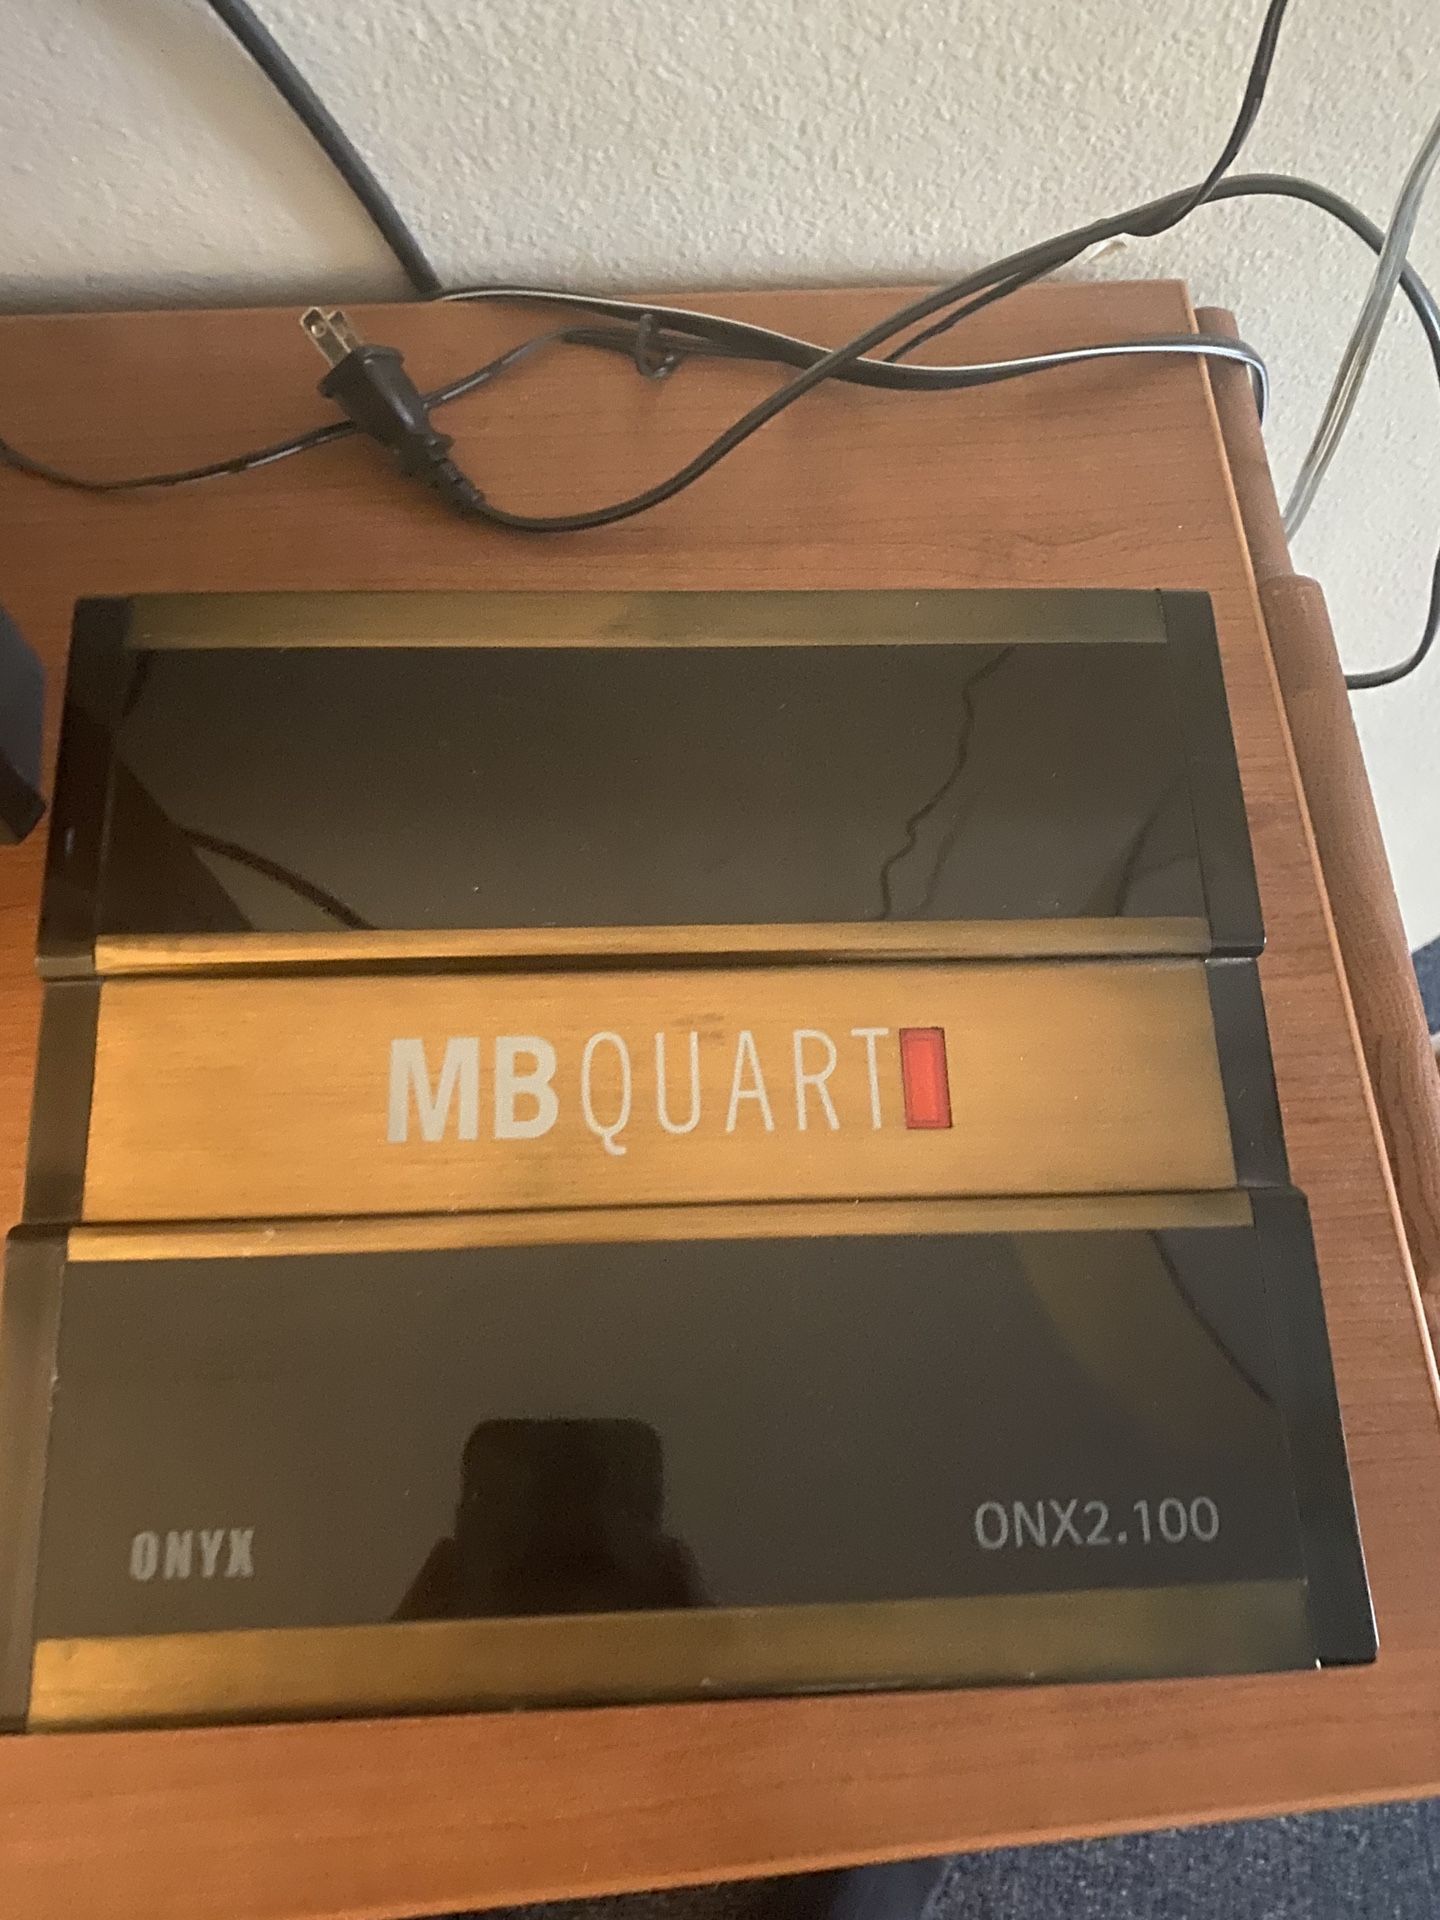 MB Quart amp